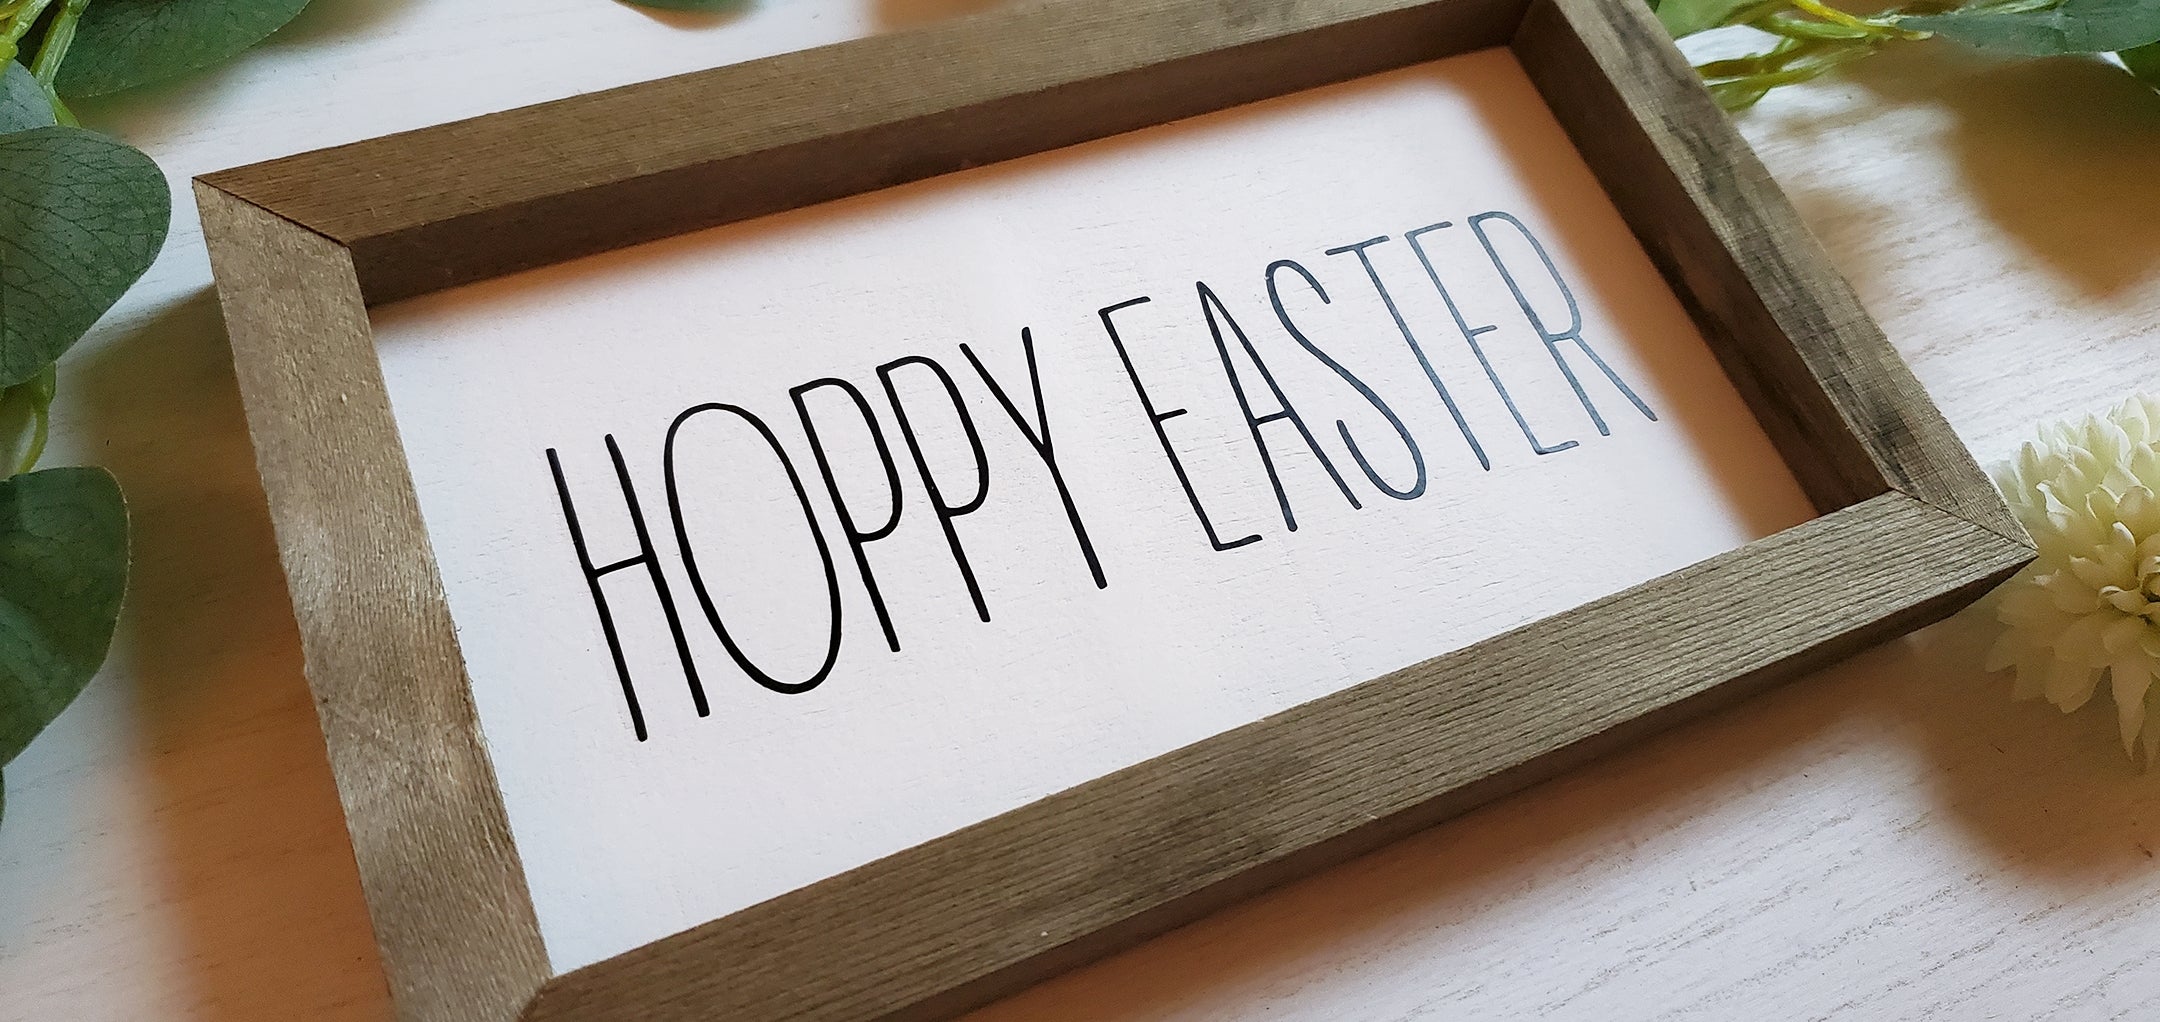 Hoppy Easter, Easter Sign, Spring Decor, Wooden Easter Sign